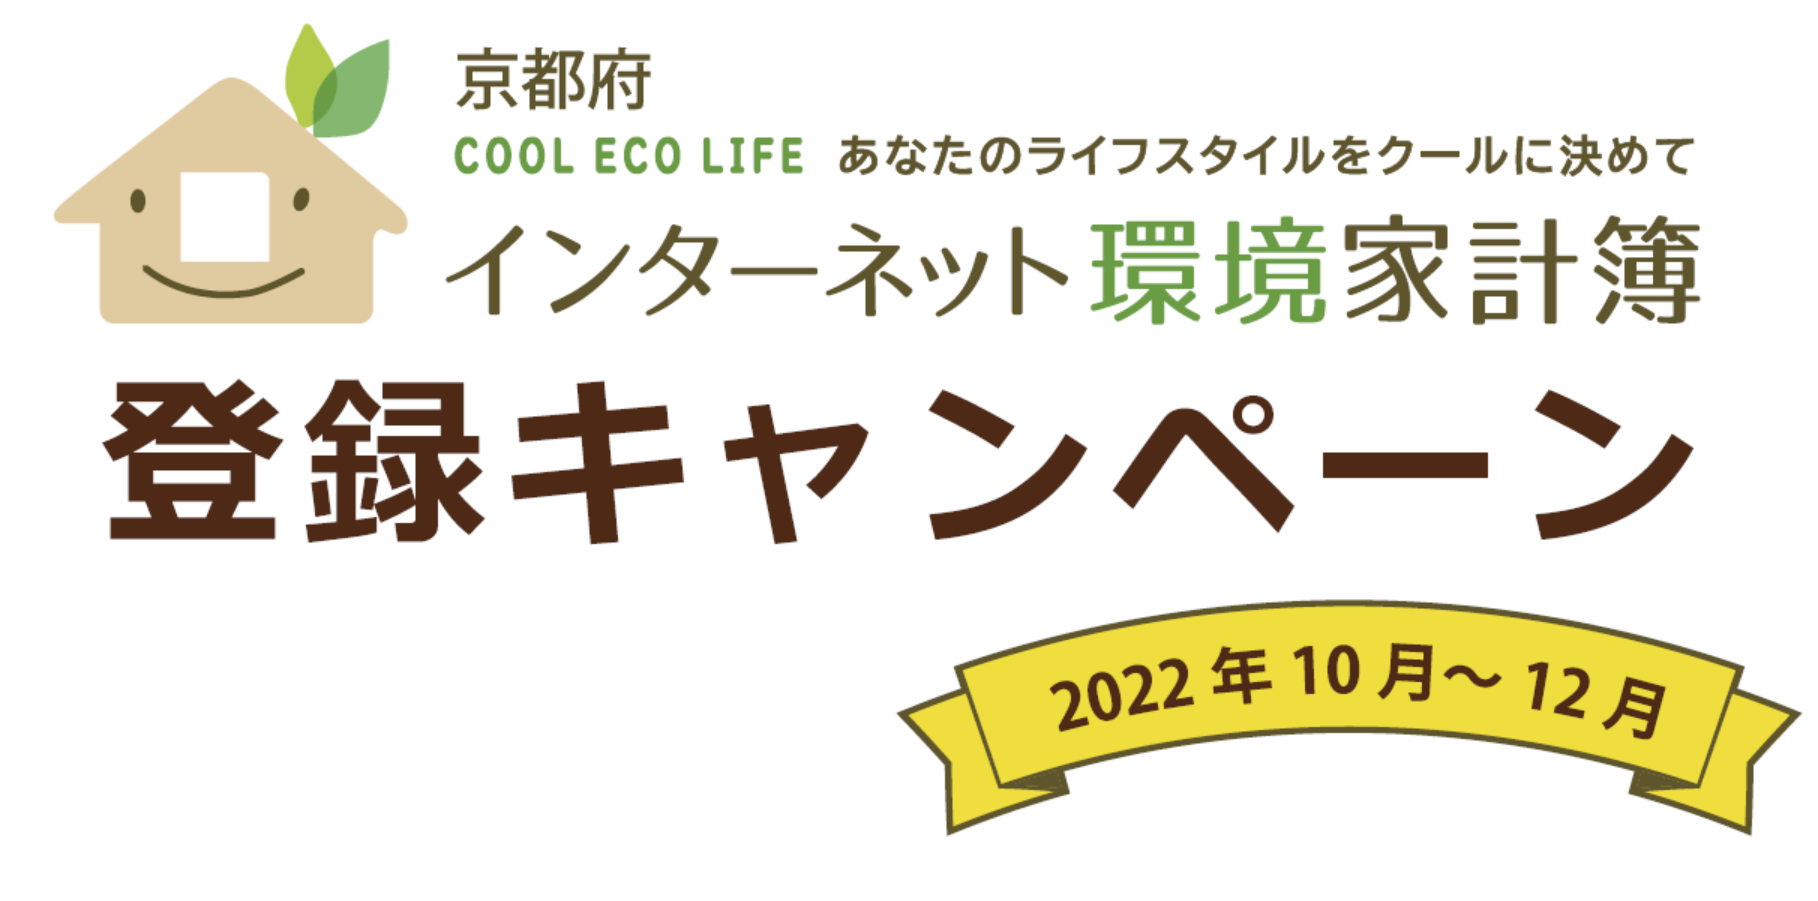 京都府 COOL ECO LIFE あなたのライフスタイルをクールに決めて インターネット環境家計簿 登録キャペーン 2022年10月〜12月